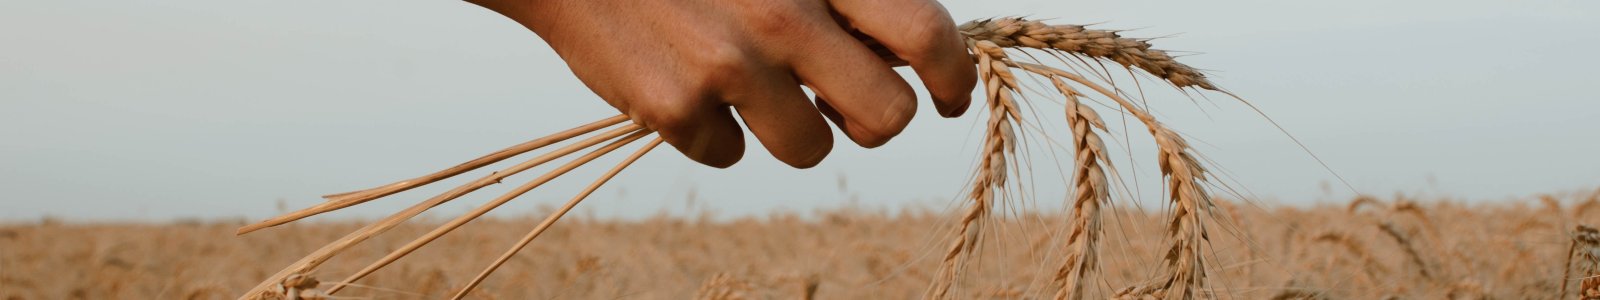 Een hand met graan wordt uitgestoken boven een graanveld.